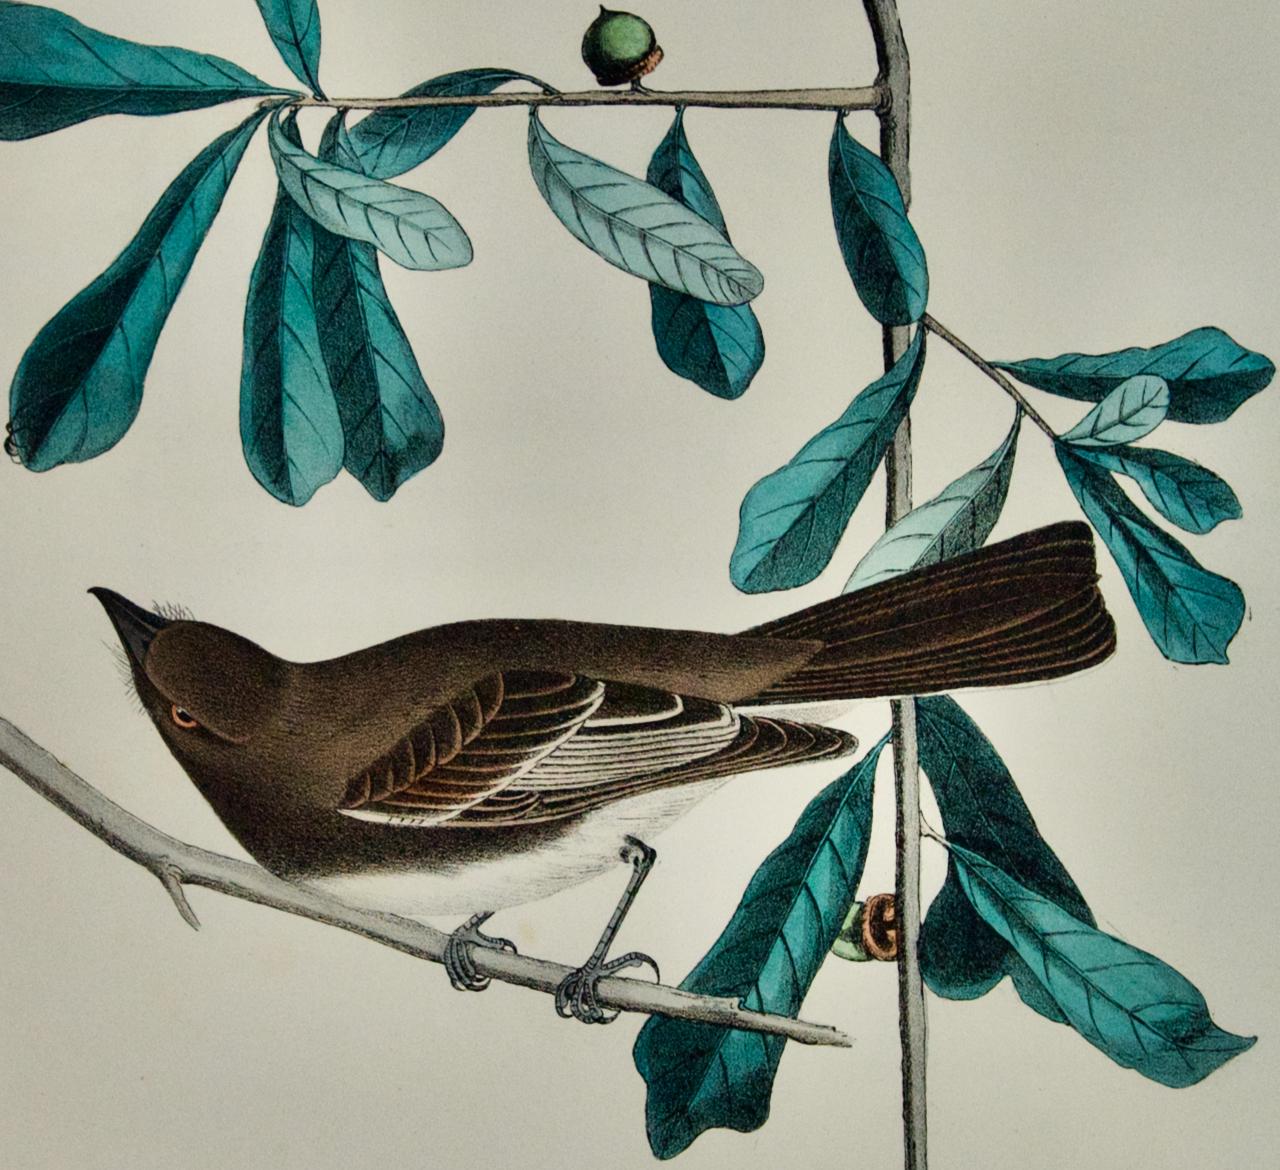 Moucherolle des montagnes Rocheuses : Lithographie originale d'Audubon du 19ème siècle, coloriée à la main. - Print de John James Audubon